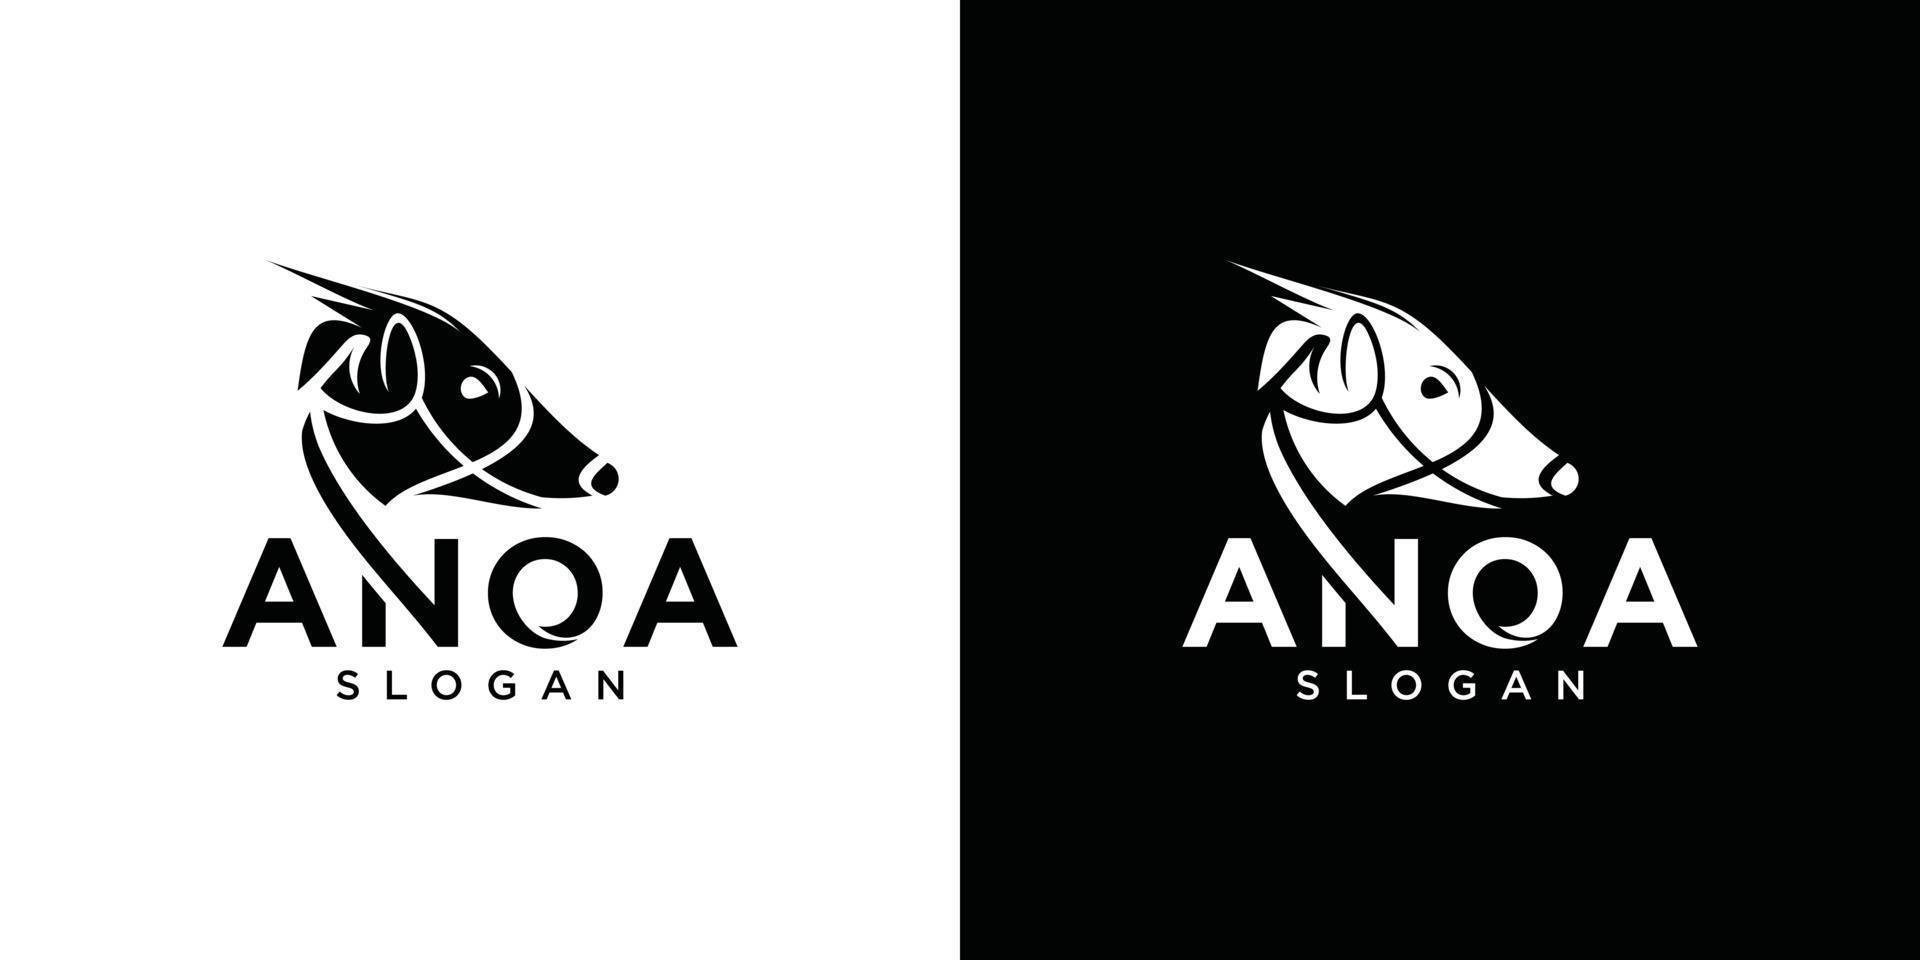 vetor de modelo de design de logotipo animal anoa